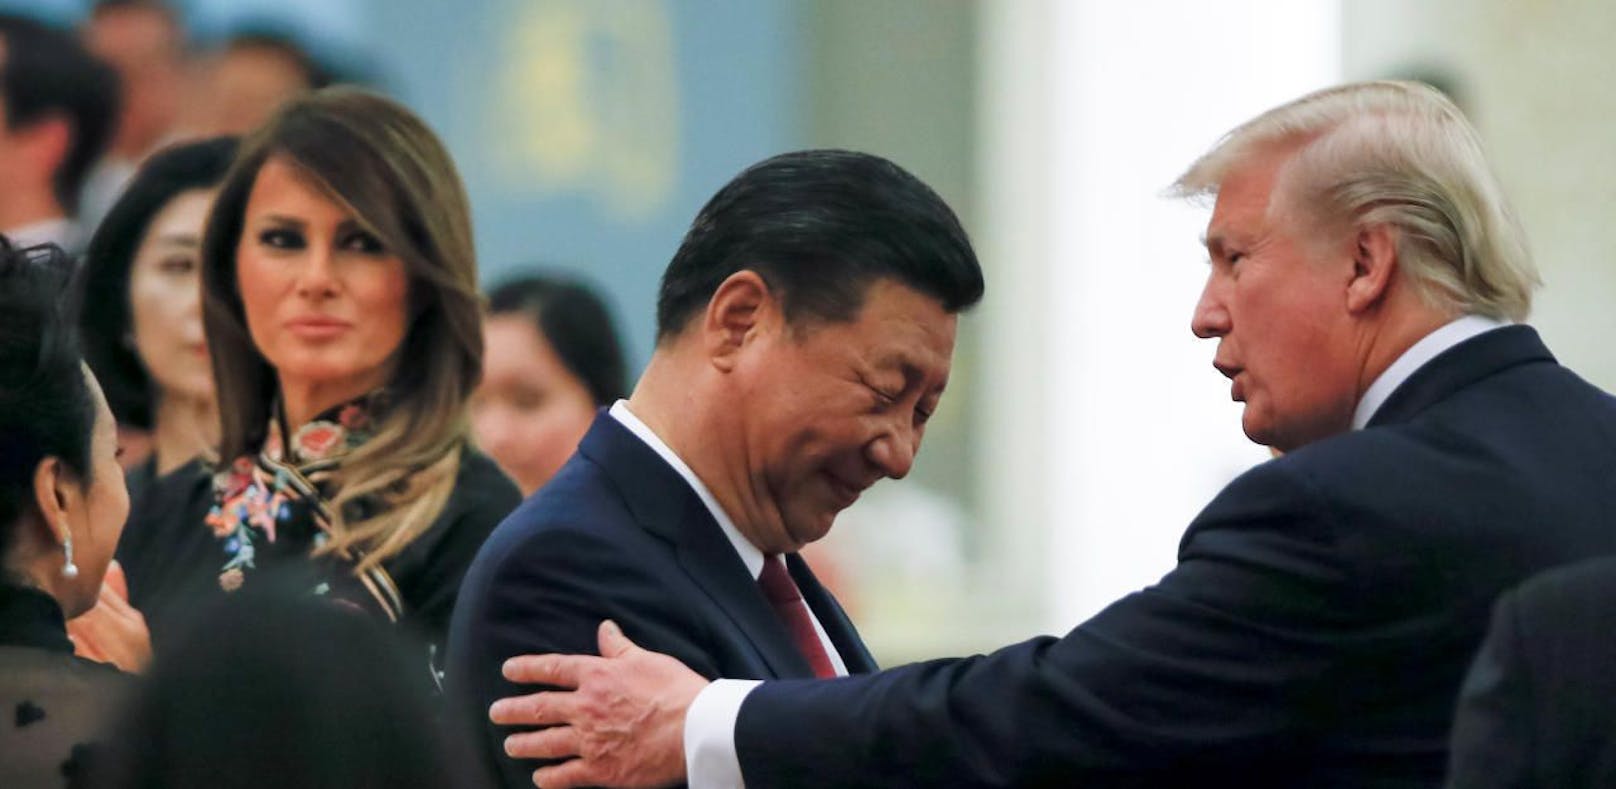 Bessere zeiten: Chinas Präsident Xi Jinping mit US Präsident Donald Trump 